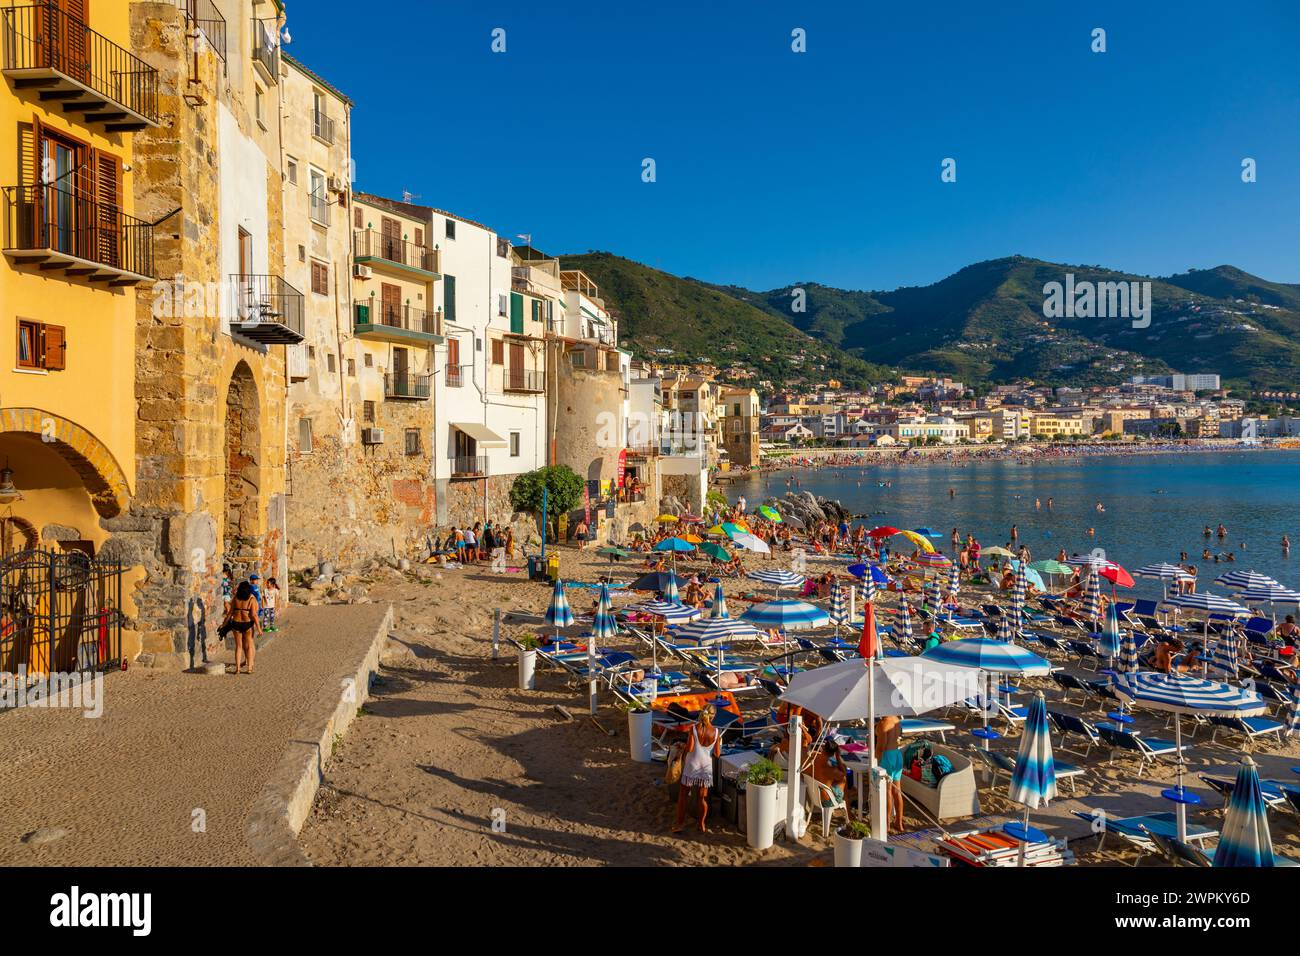 Touristes sur la plage, Cefalu, montagnes en arrière-plan, Province de Palerme, Sicile, Italie, Méditerranée, Europe Banque D'Images